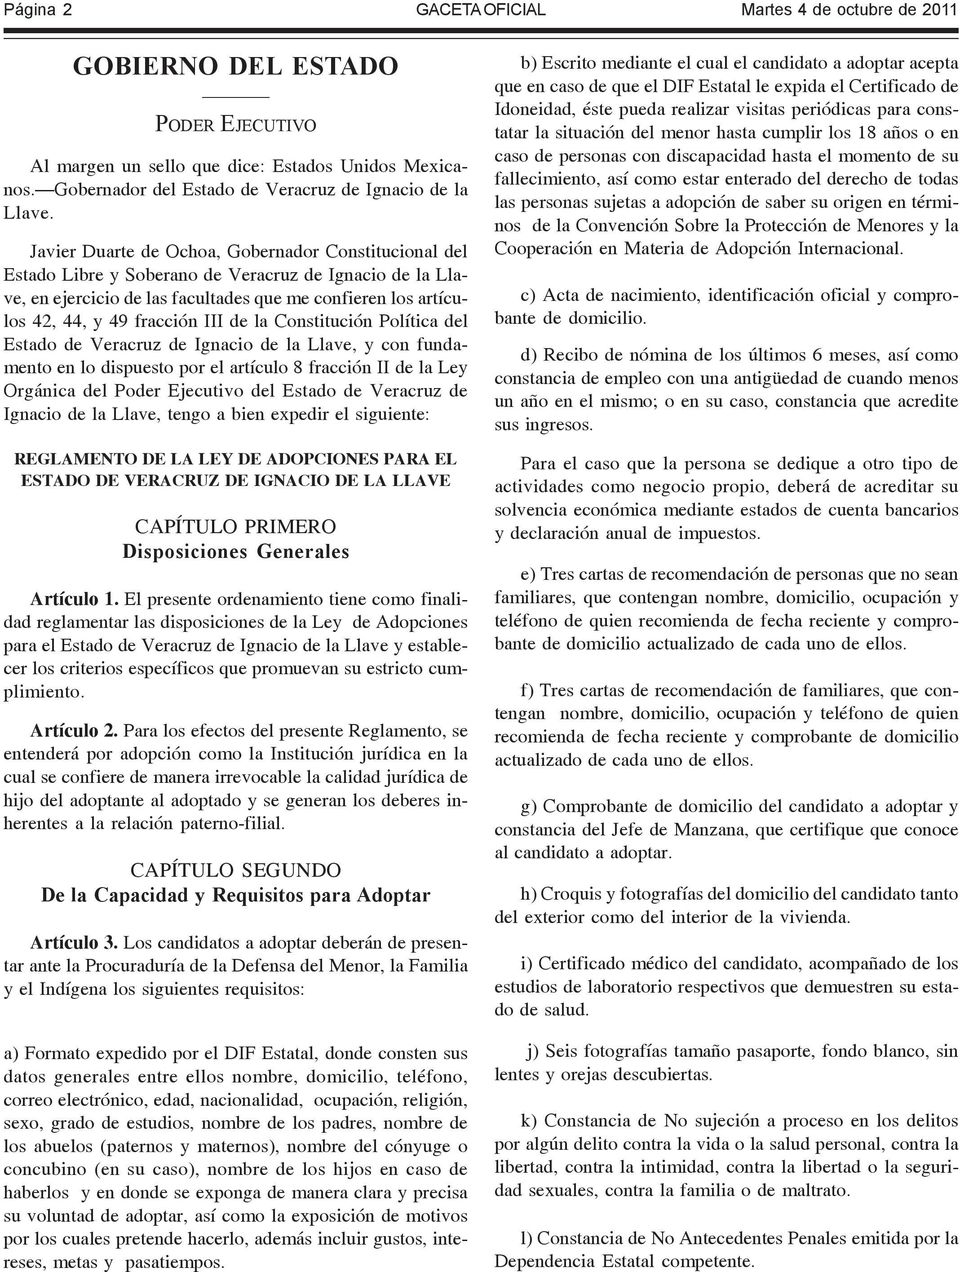 III de la Constitución Política del Estado de Veracruz de Ignacio de la Llave, y con fundamento en lo dispuesto por el artículo 8 fracción II de la Ley Orgánica del Poder Ejecutivo del Estado de